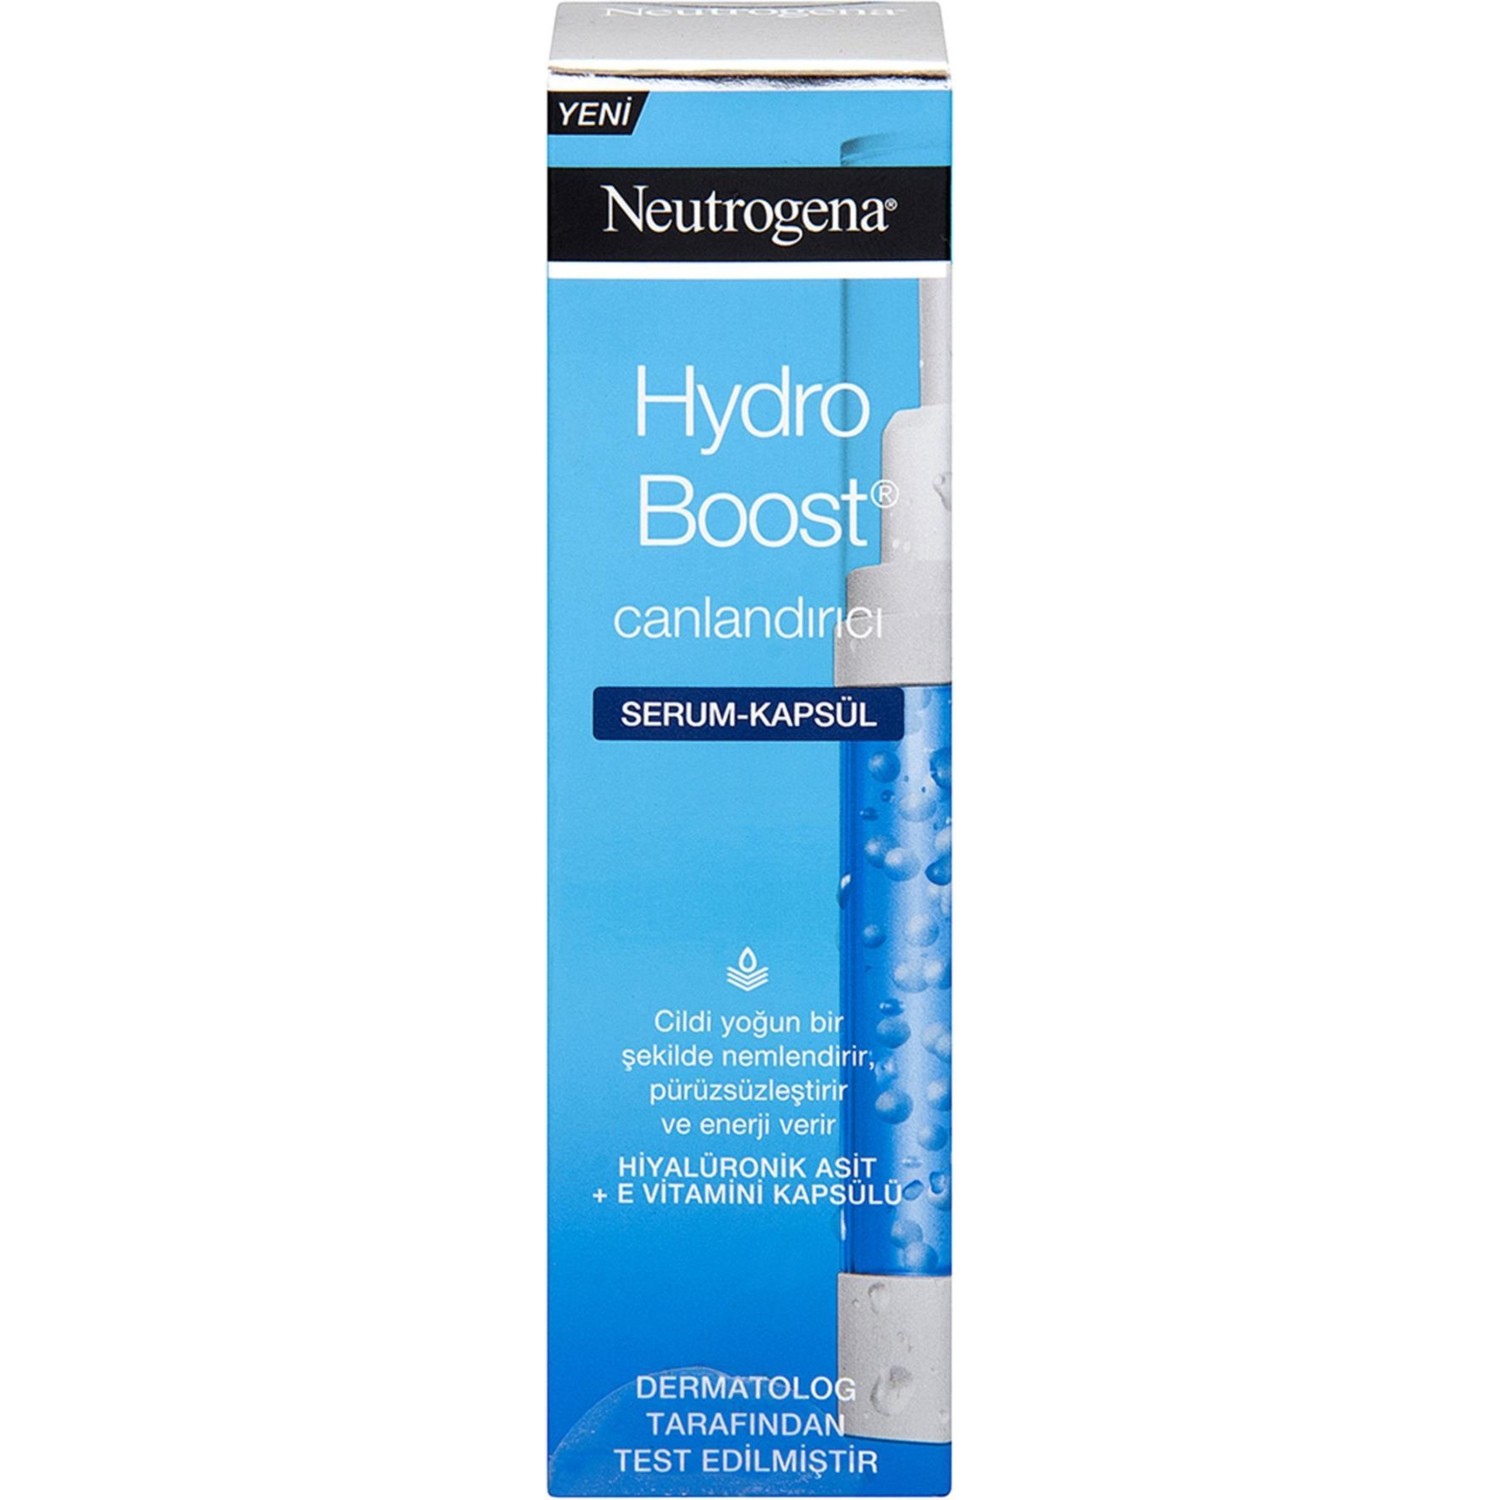 Крем для тела Neutrogena Hydro Boost восстанавливающая, 30 мл neutrogena hydro boost увлажняющая сыворотка 1 жидкая унция 30 мл